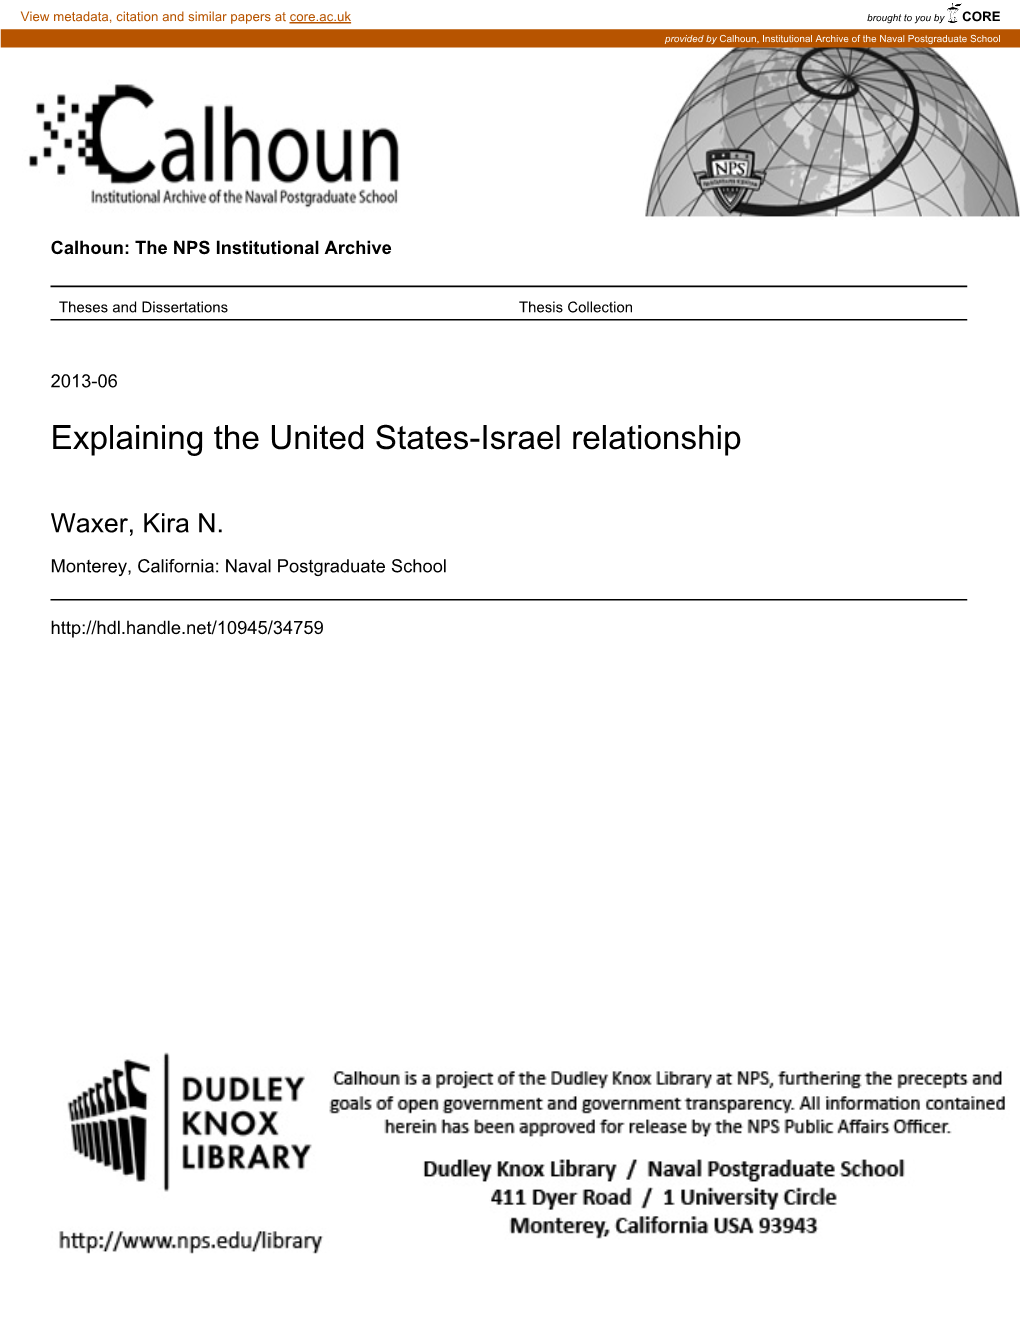 Explaining the United States-Israel Relationship